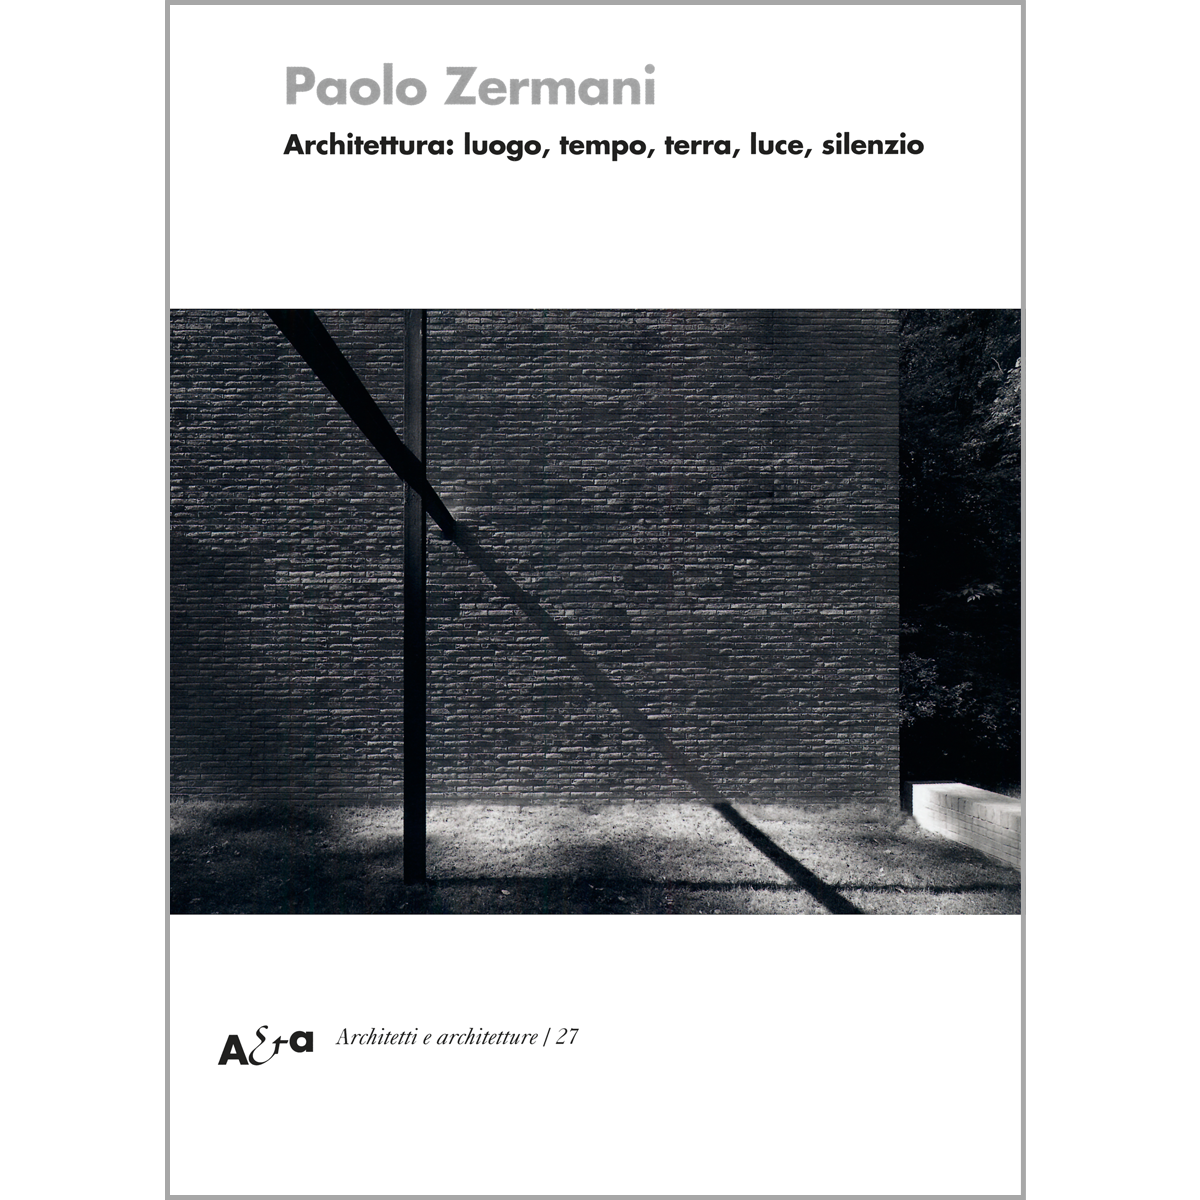 Paolo Zermani